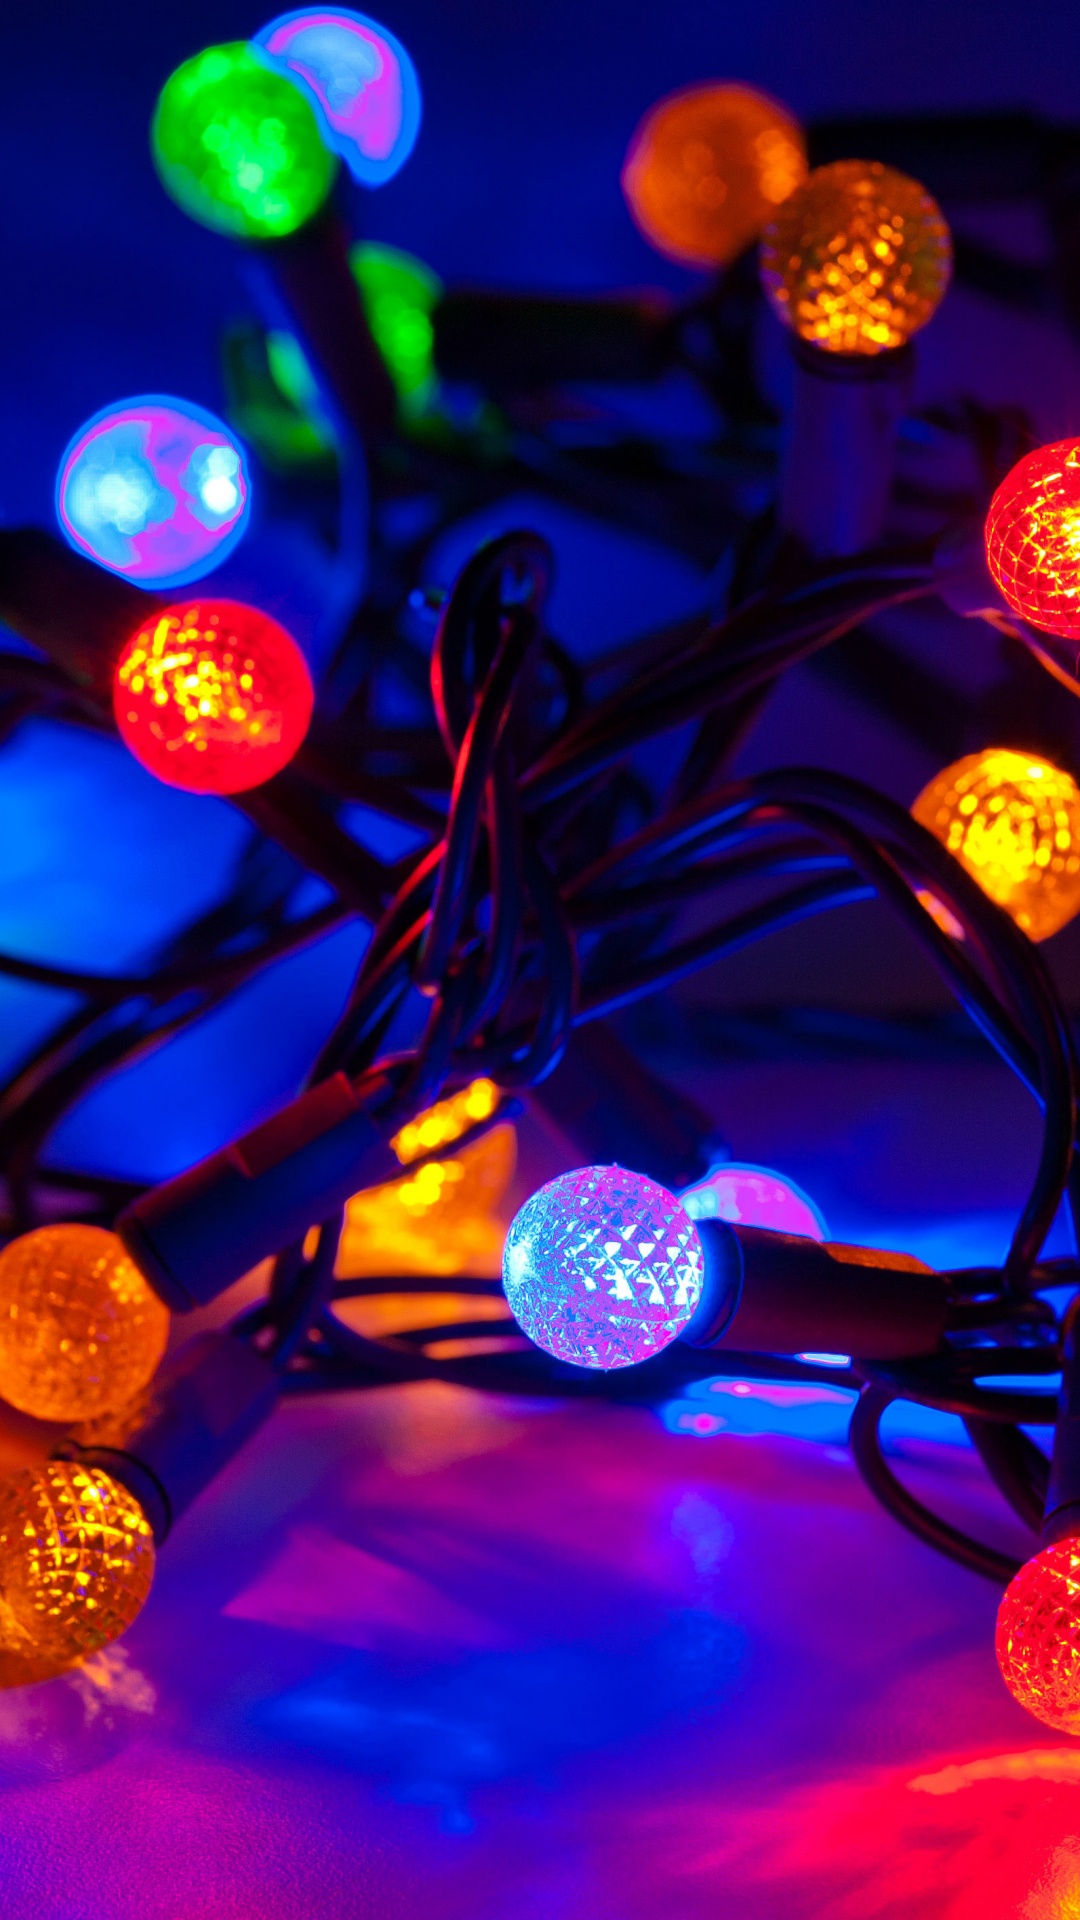 圣诞彩灯, 圣诞节那天, 光, 圣诞装饰, 发光二极管 壁纸 1080x1920 允许